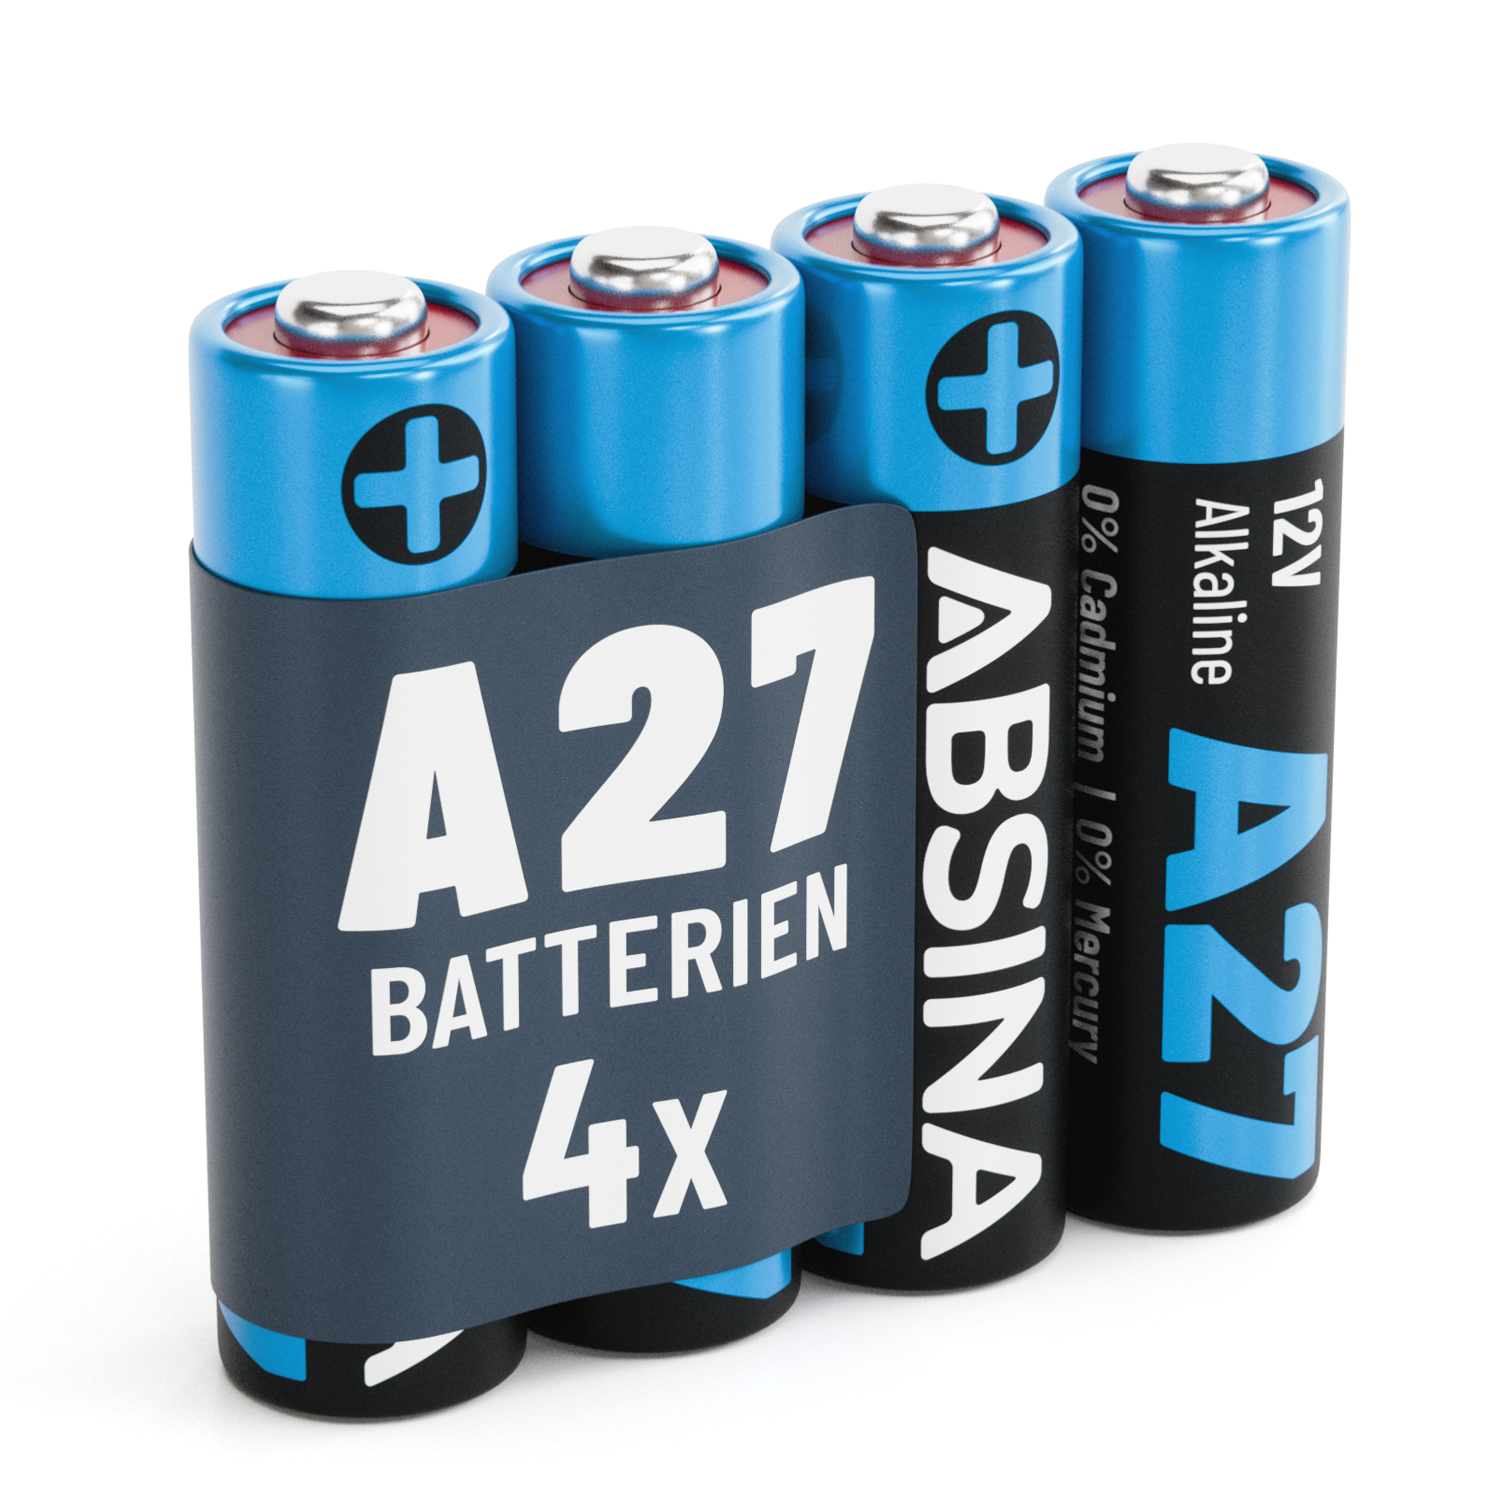 A27 Batterie Alkaline 12V